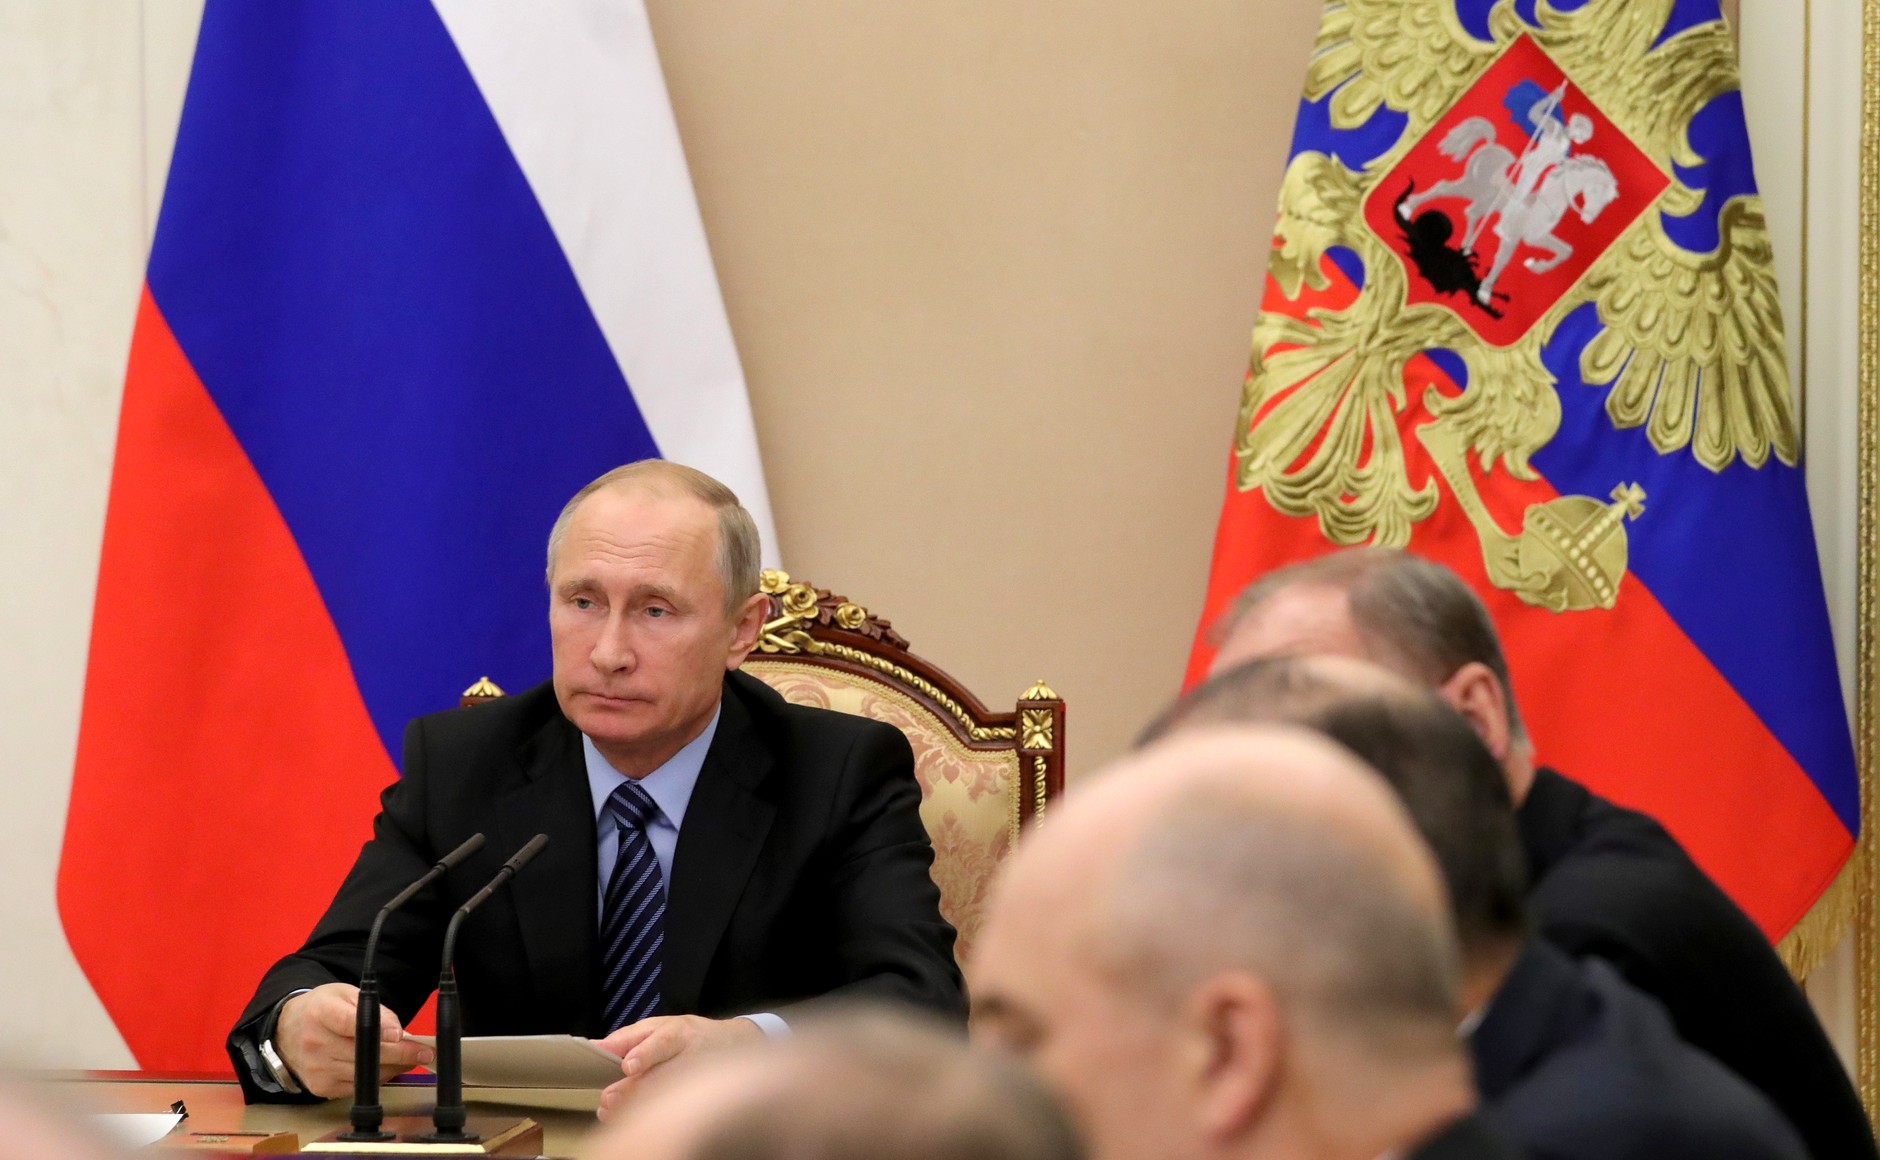 Горячие точки и зоны конфликтов стали для некоторых выгодным бизнесом - Путин